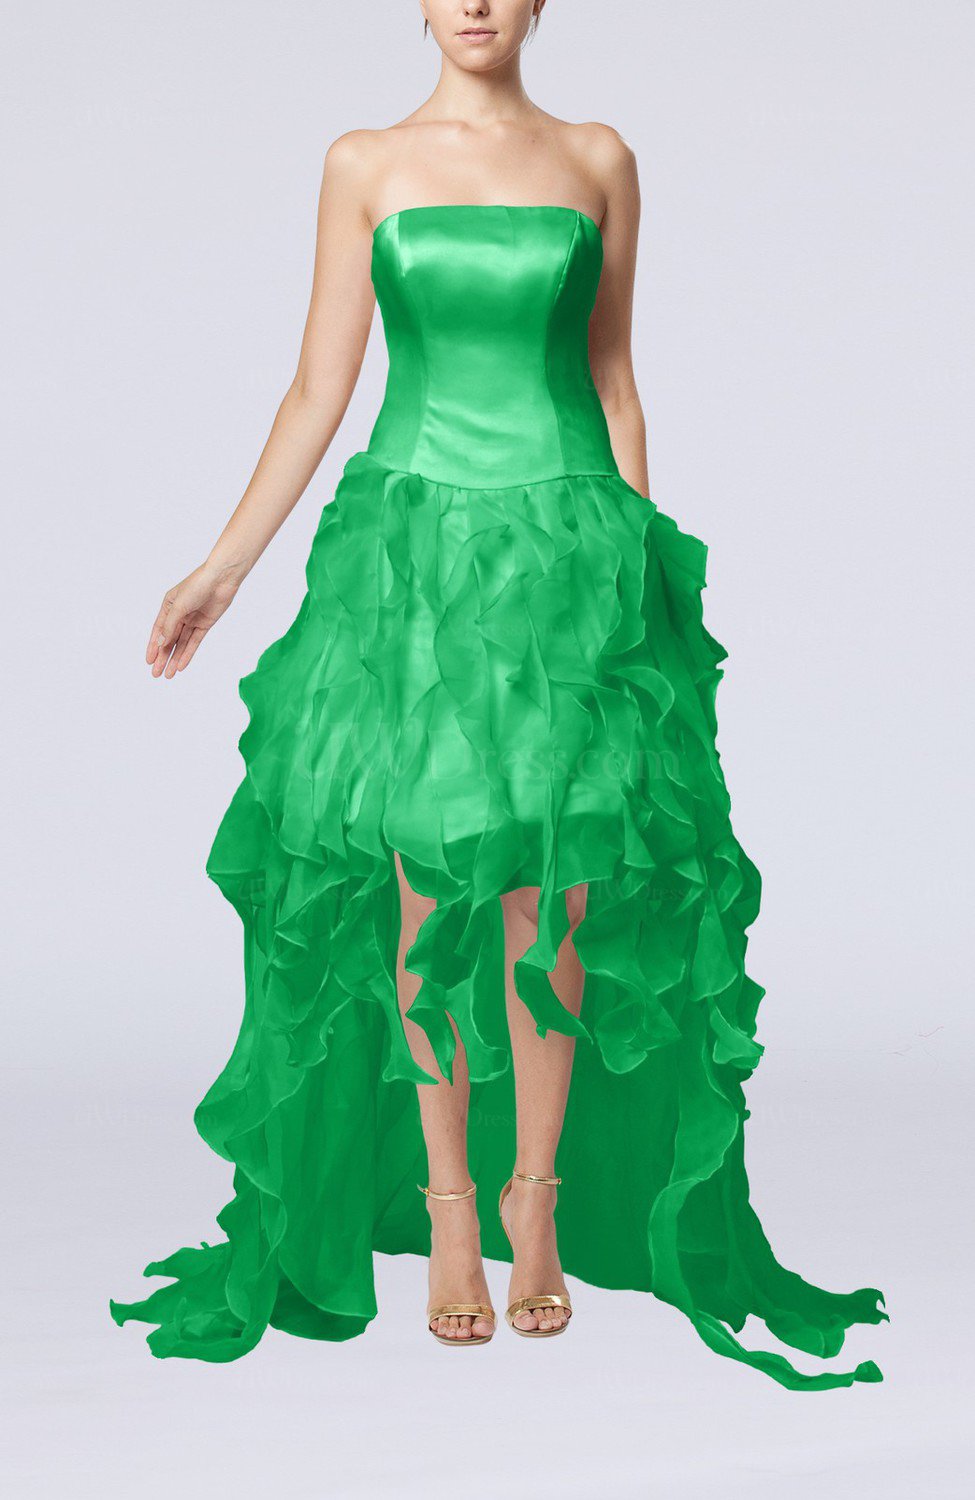 Green Modern Strapless Sleeveless Backless Organza Evening Dresses ...